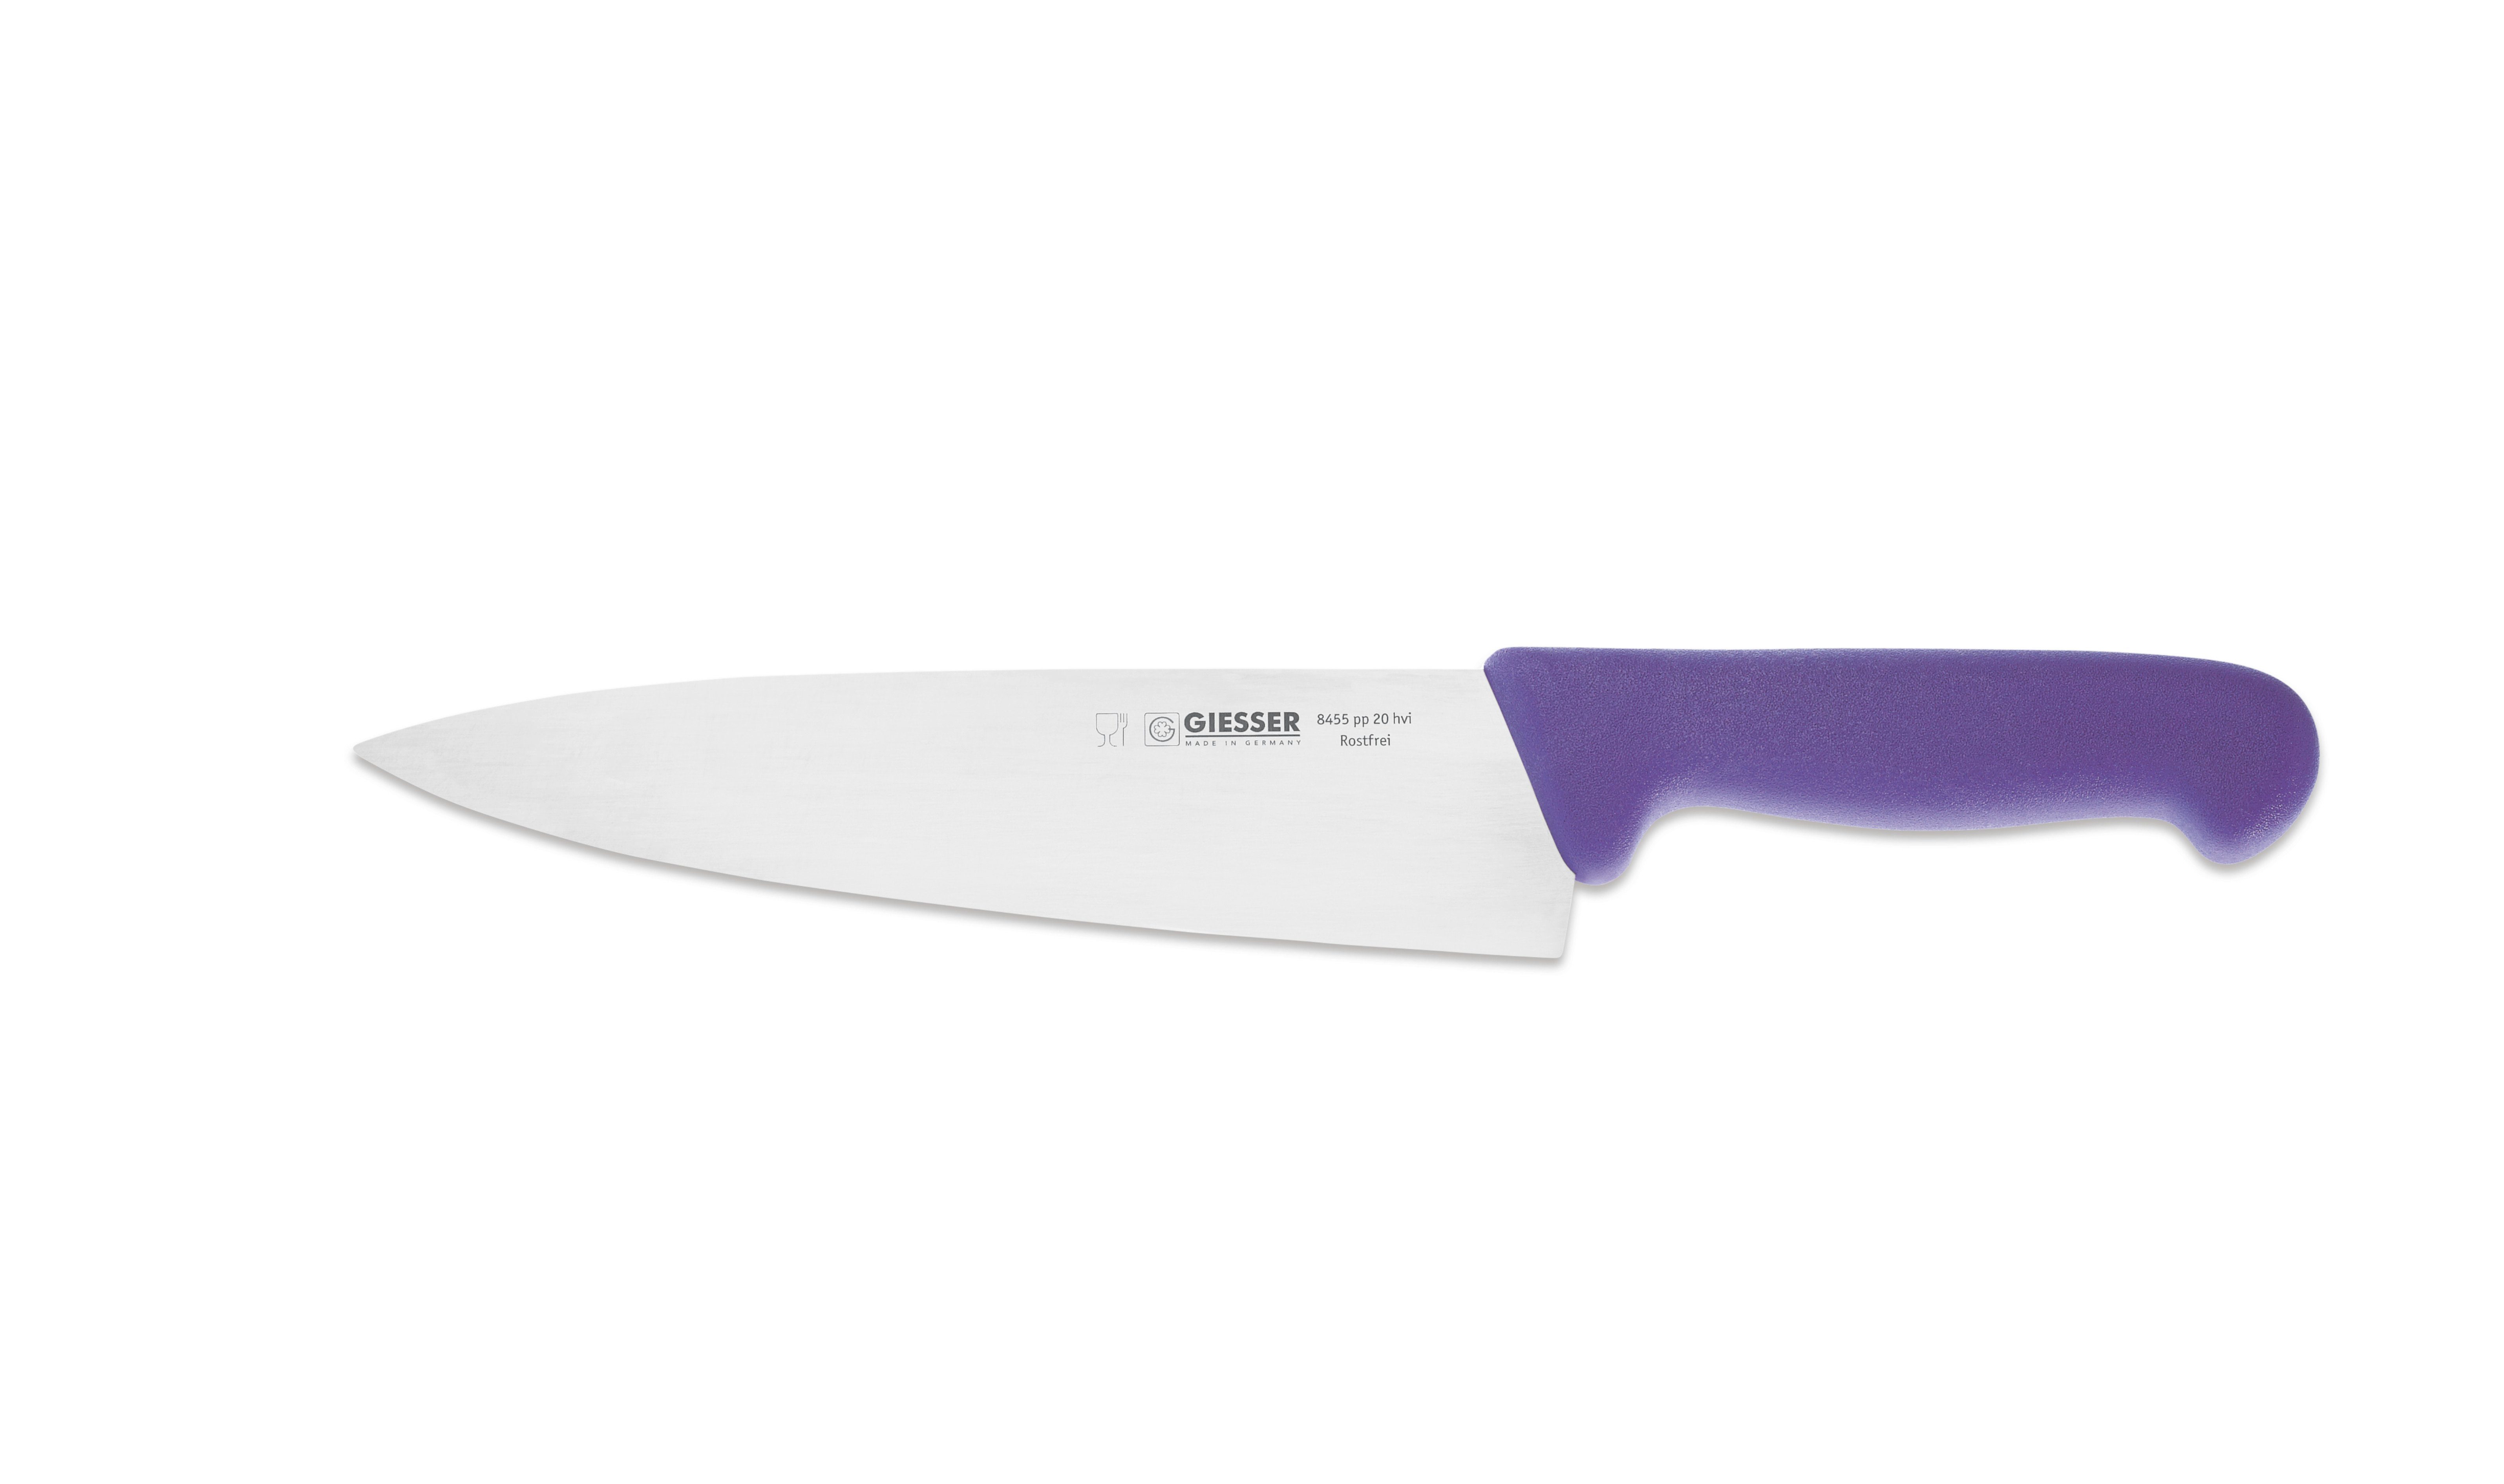 Giesser Messer Kochmesser Küchenmesser breit 8455, Rostfrei, breite Form, scharf, Handabzug, Ideal für jede Küche halal violett